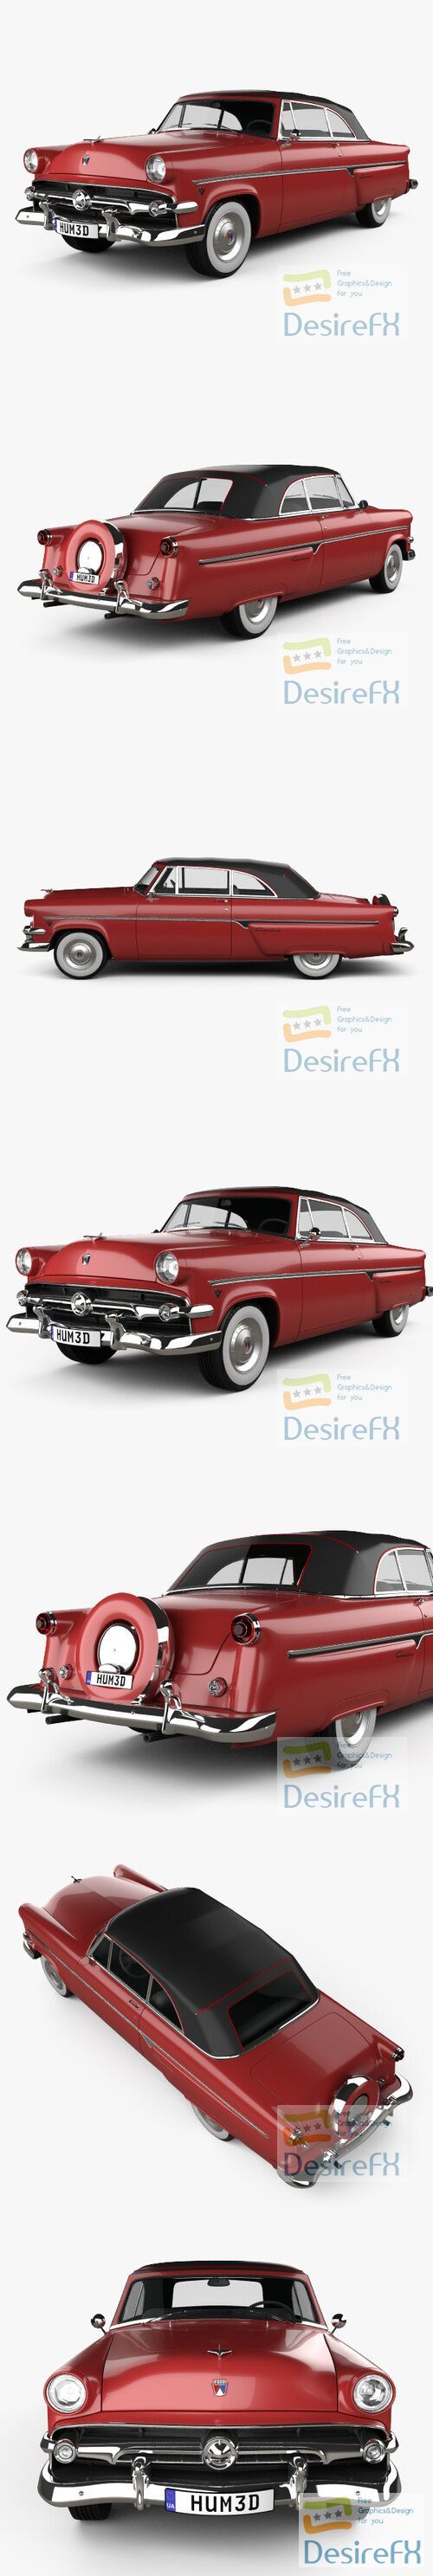 Ford Crestline Sunliner 1954 3D Model